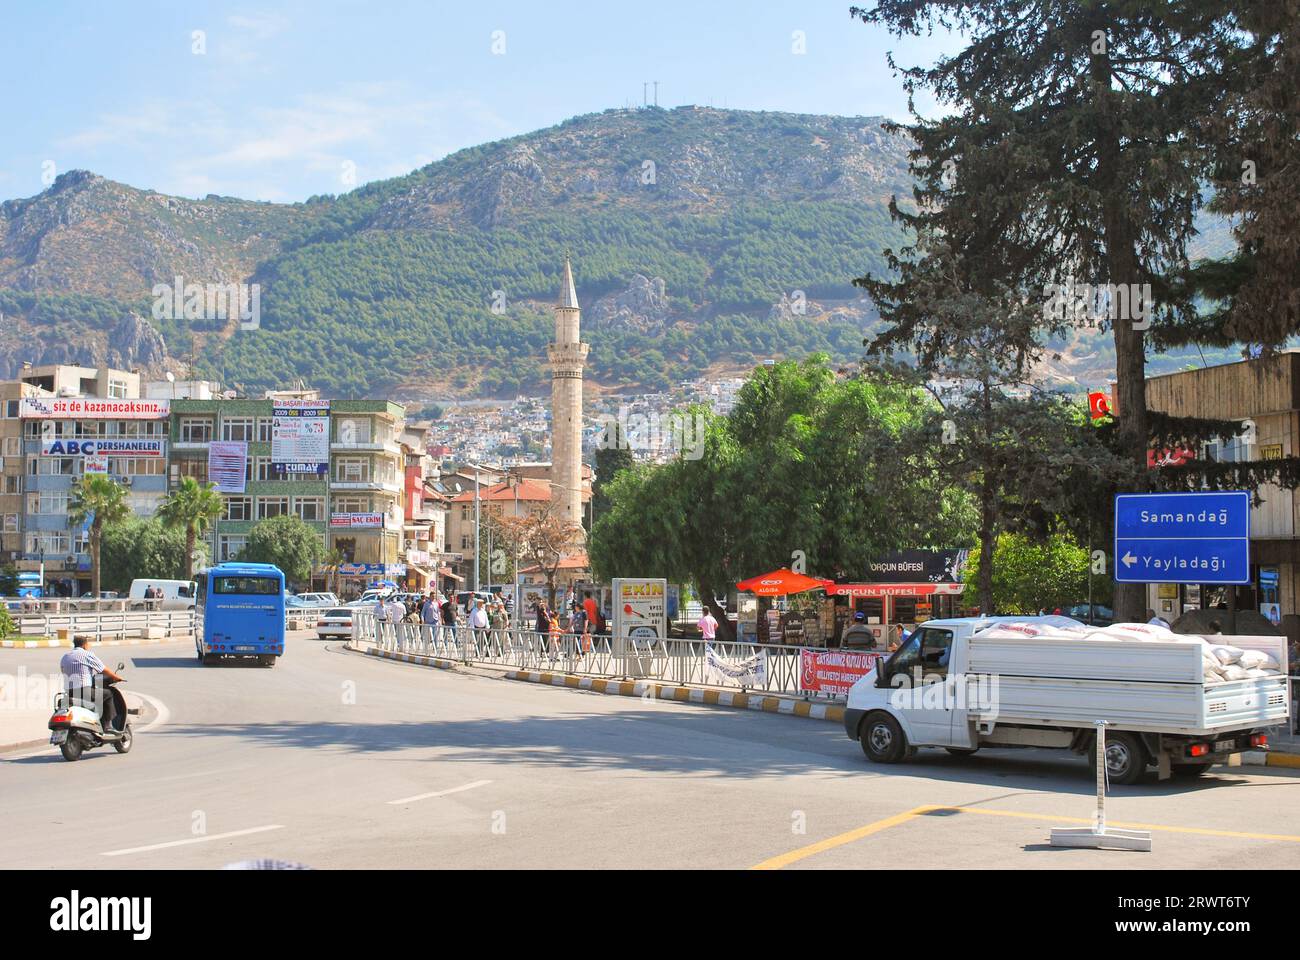 Place de la République, Antakya, Hatay, Turquie - 23 septembre 2009 : reliant les deux côtés de la ville, connue sous le nom de 'Cumhuriyet Meydani' en turc Banque D'Images